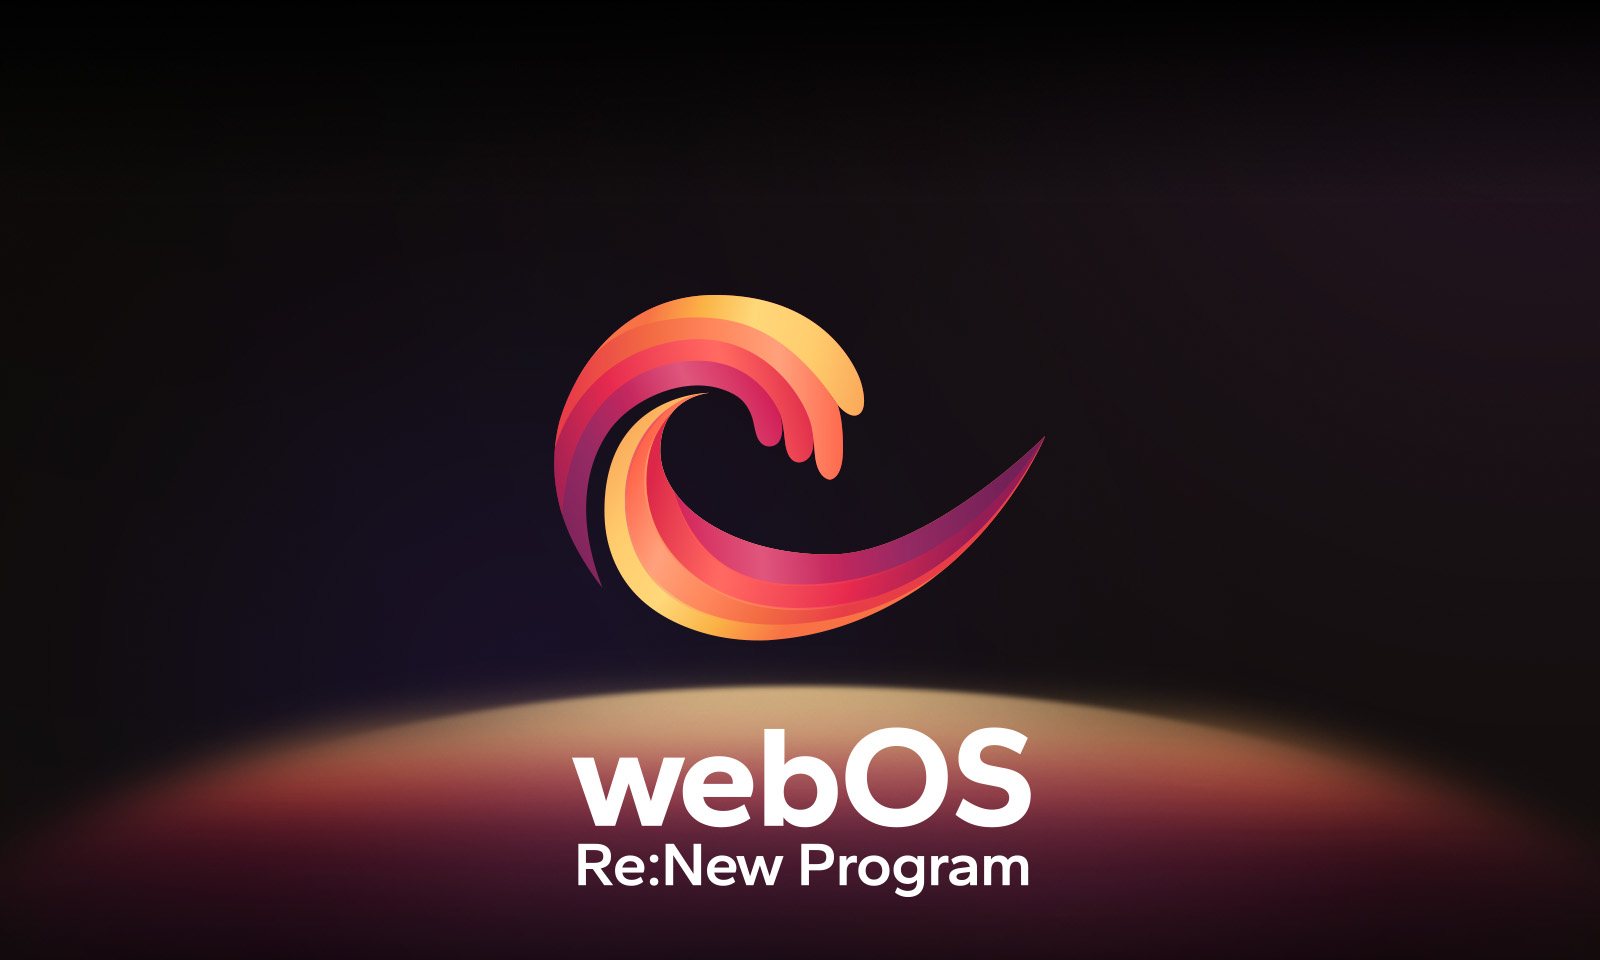 Le logo webOS flotte au centre sur un fond noir, et l’espace en dessous est illuminé par les couleurs rouge, orange et jaune du logo. Les mots « webOS Re:New Program » figurent au bas du logo.